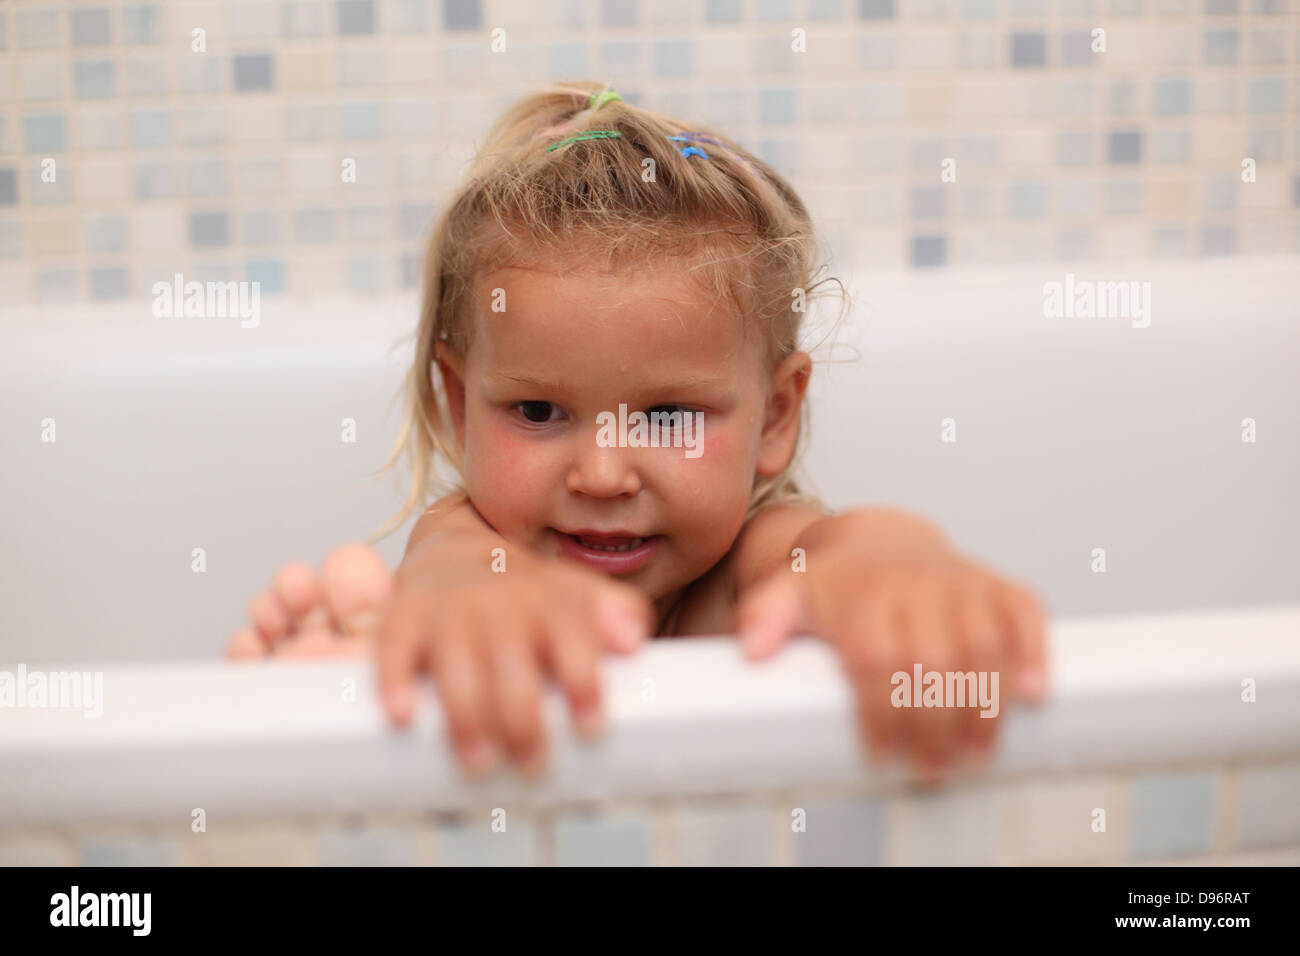 Kleine Mädchen Spielen In Der Badewanne Stockfotografie Alamy